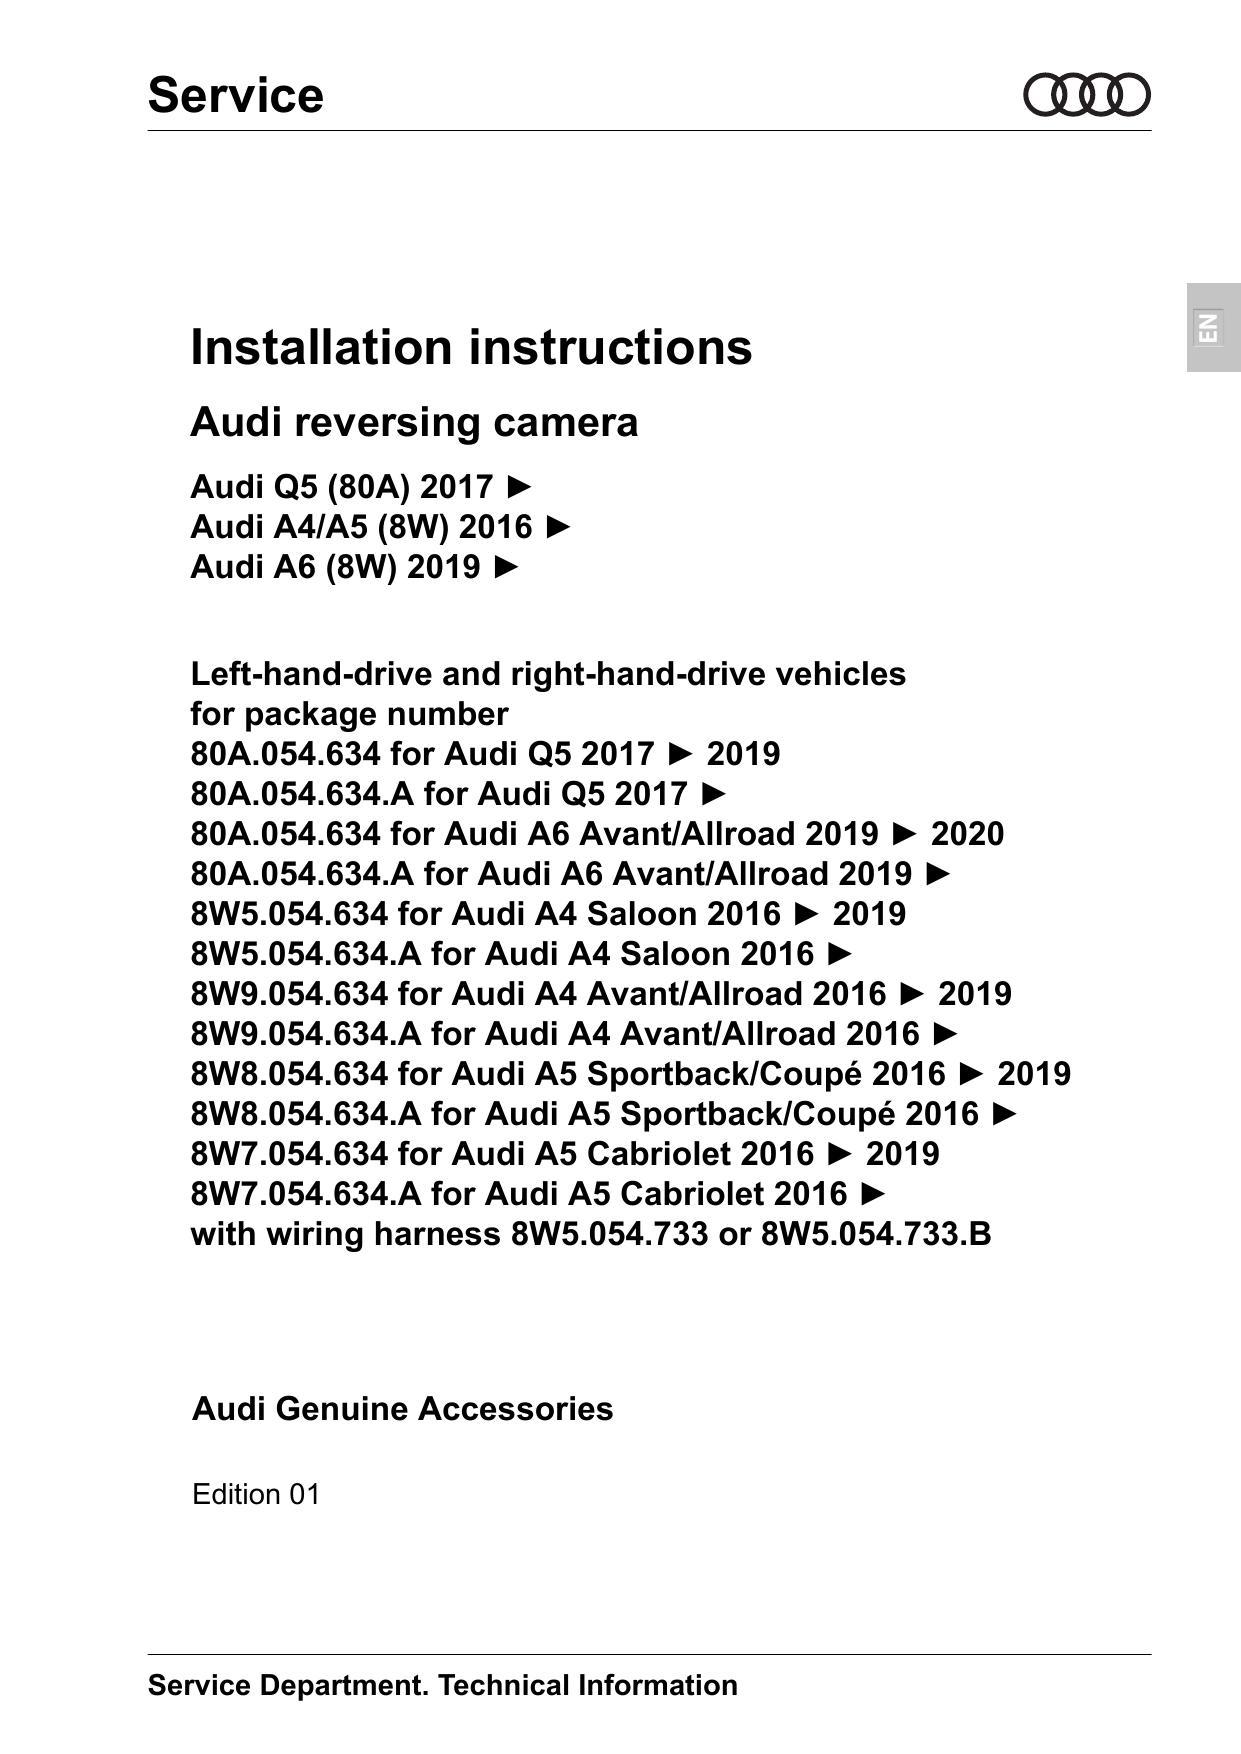 installation-instructions-audi-reversing-camera-edition-01.pdf